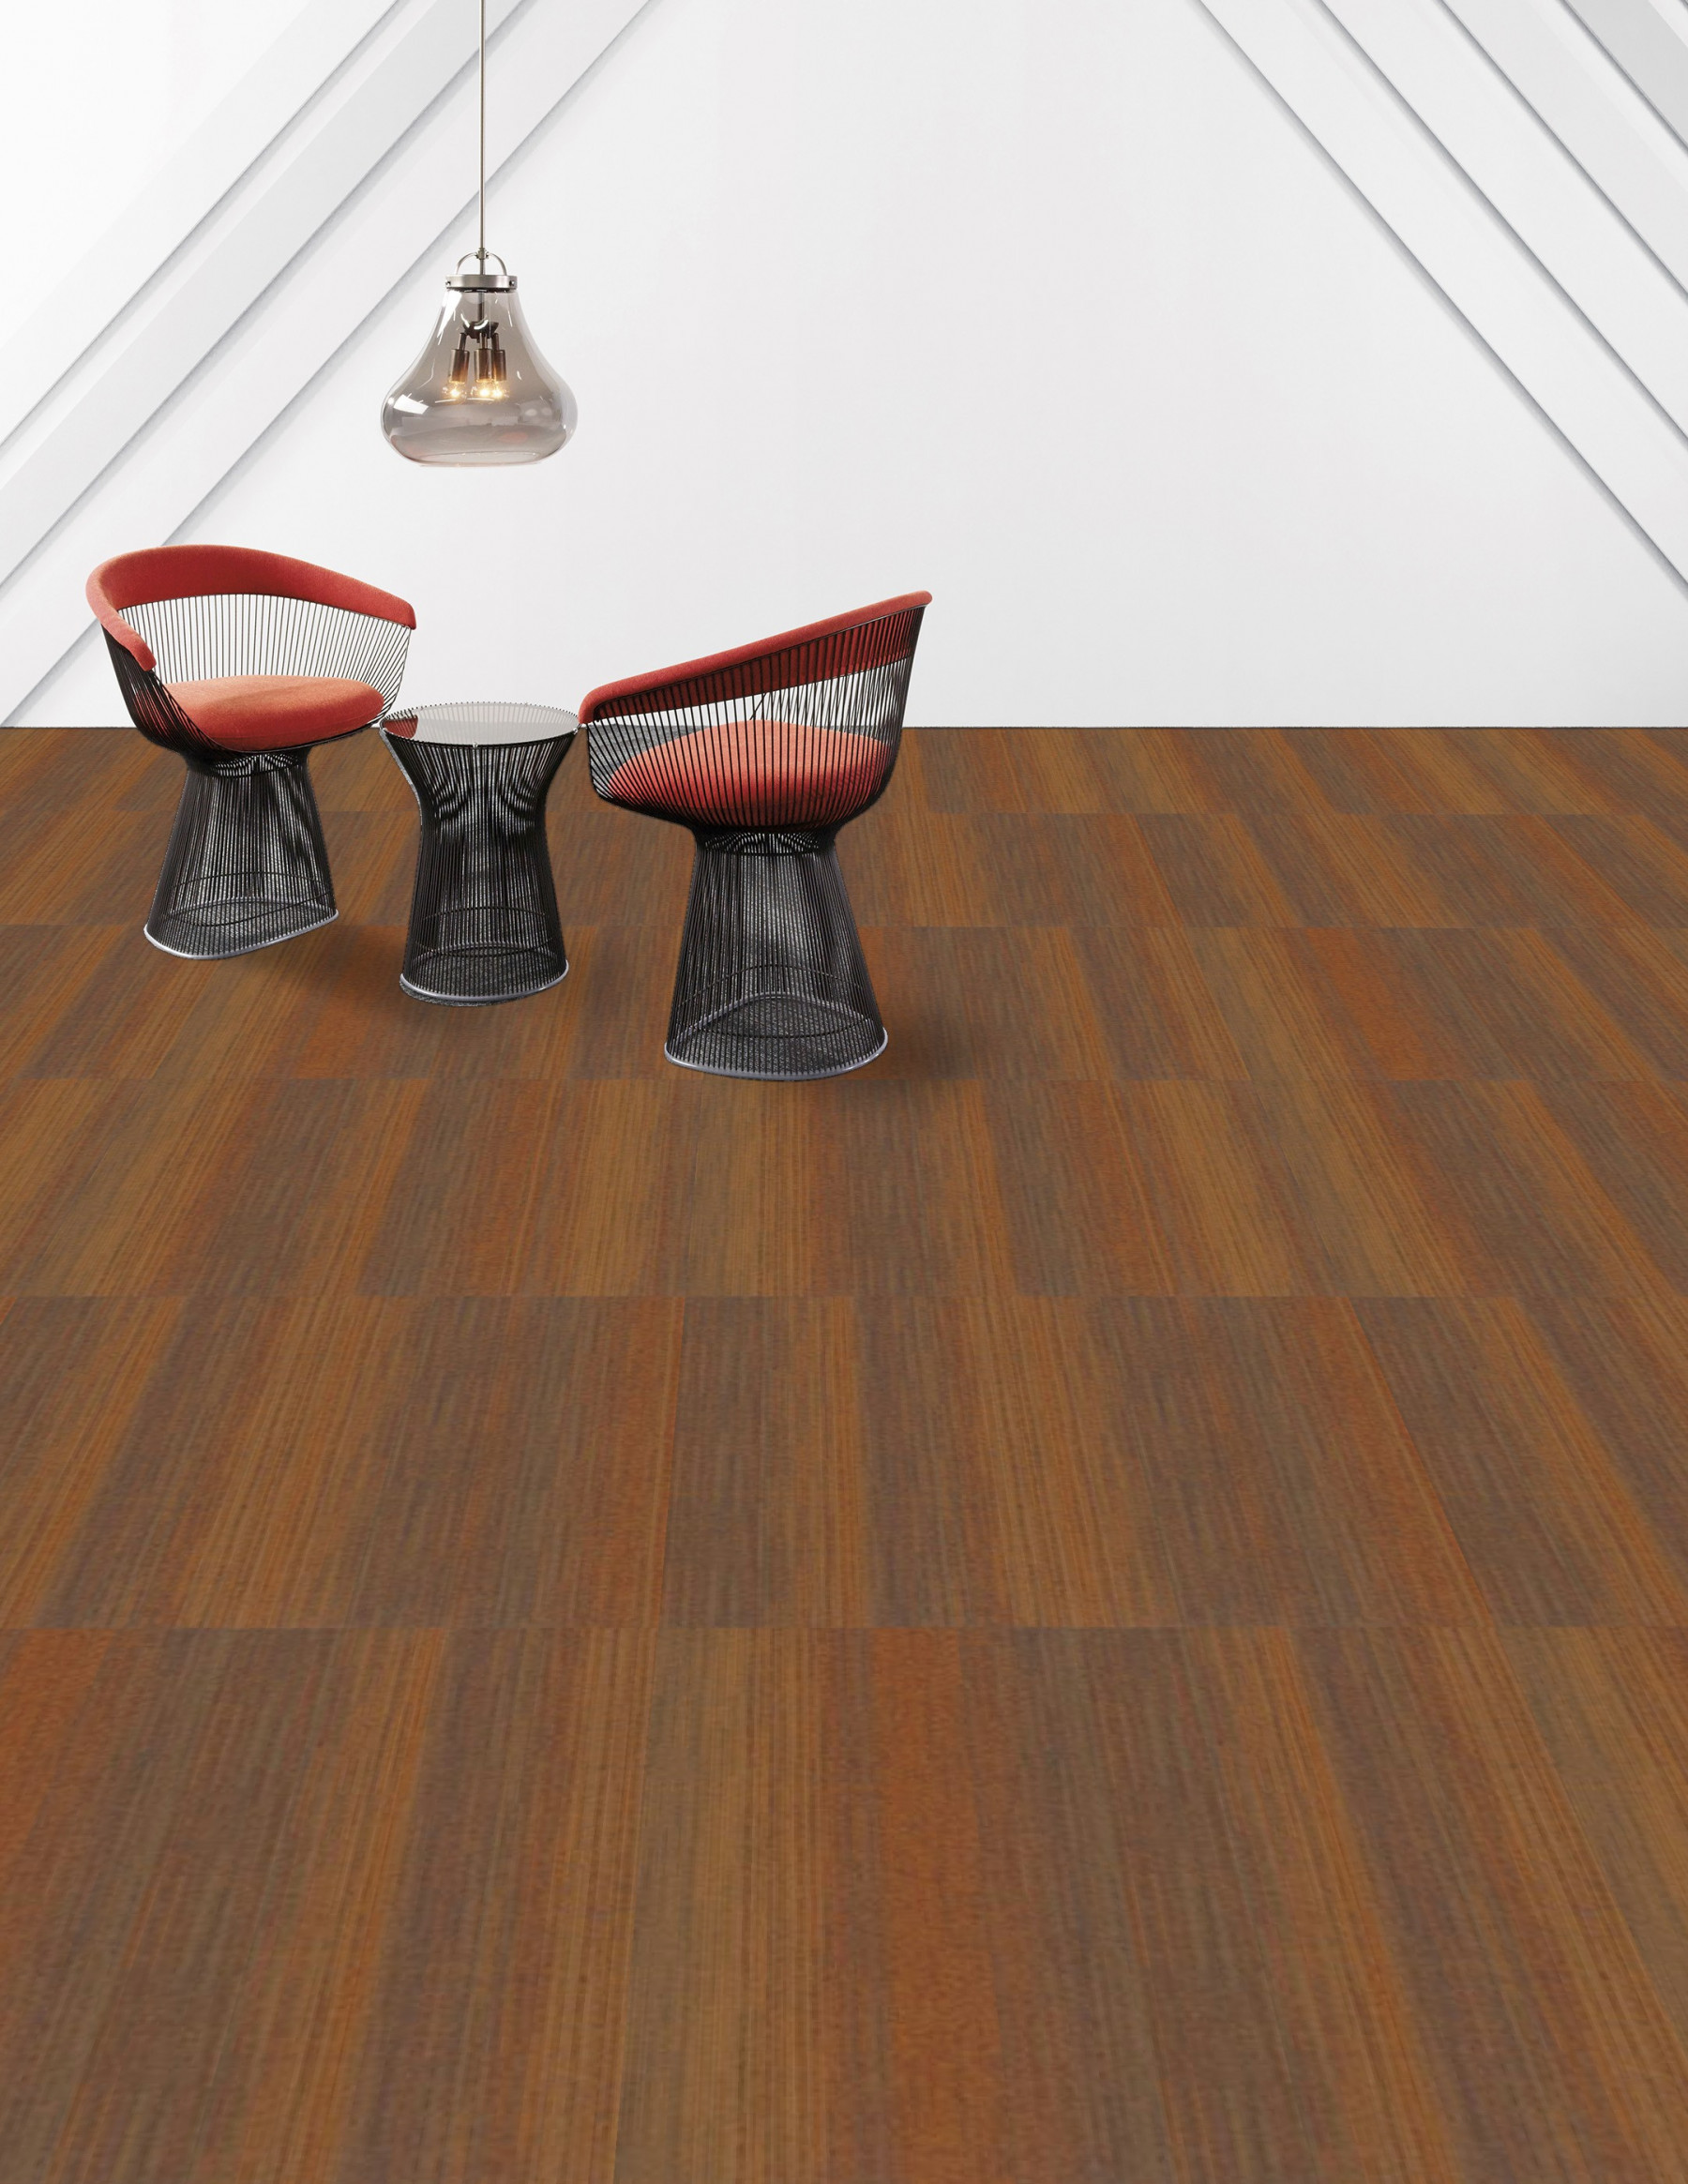 Shaw Saturate Carpet Tile Orange 9" x 36" Premium(22.5 sq ft/ctn)